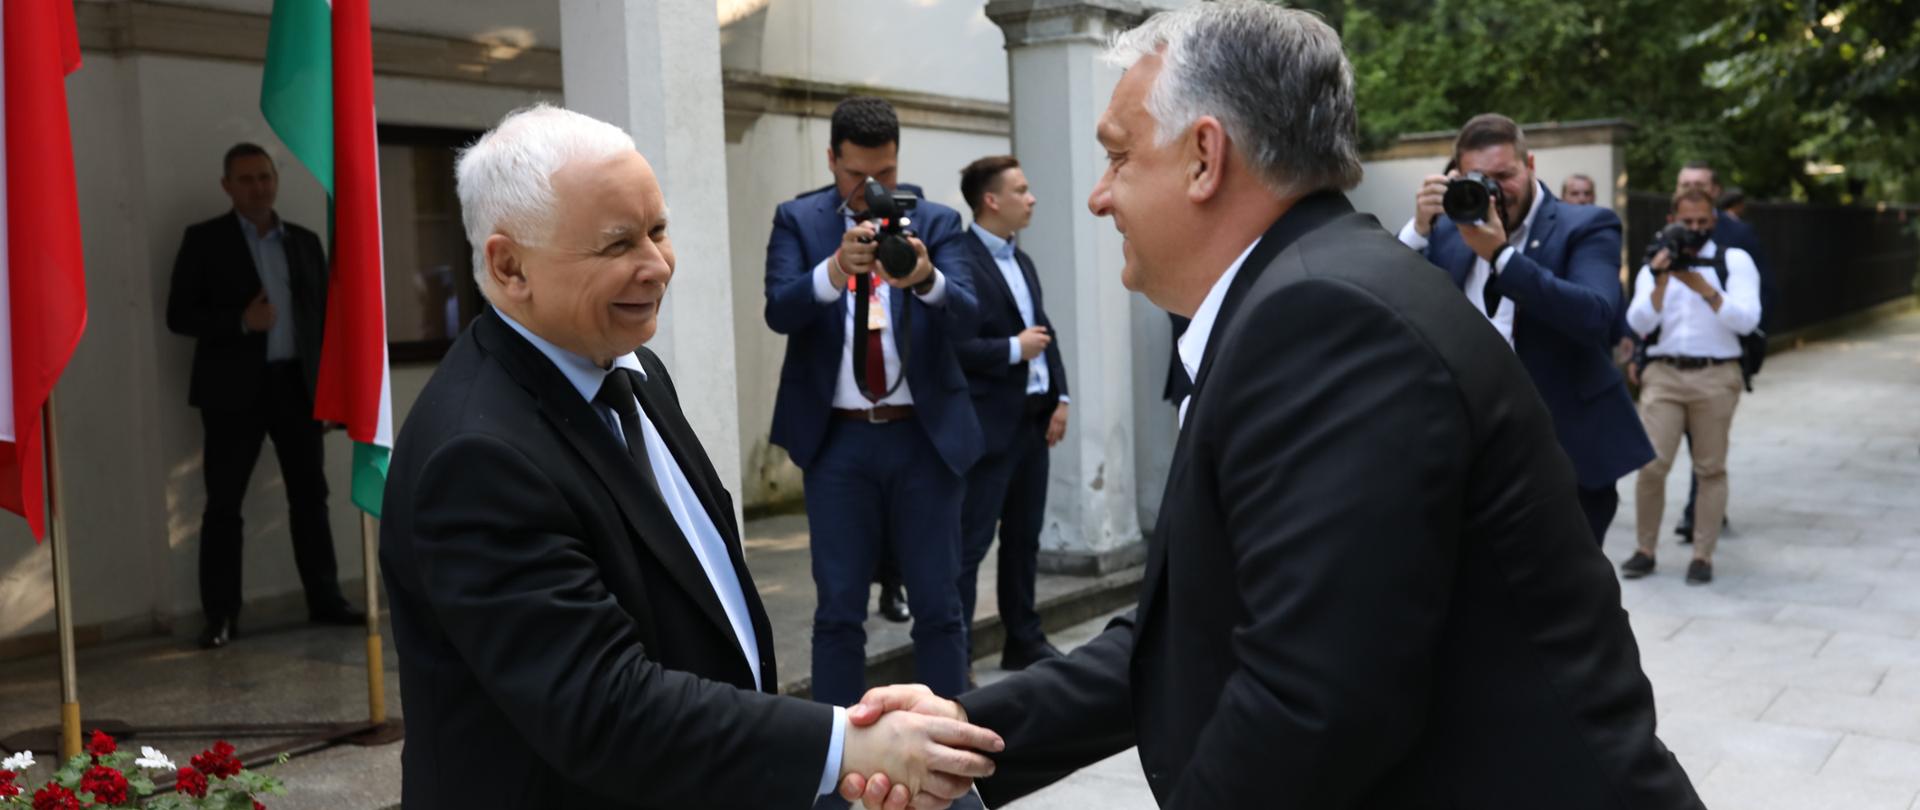 Jarosław Kaczyński ściska dłoń Viktora Orbana.